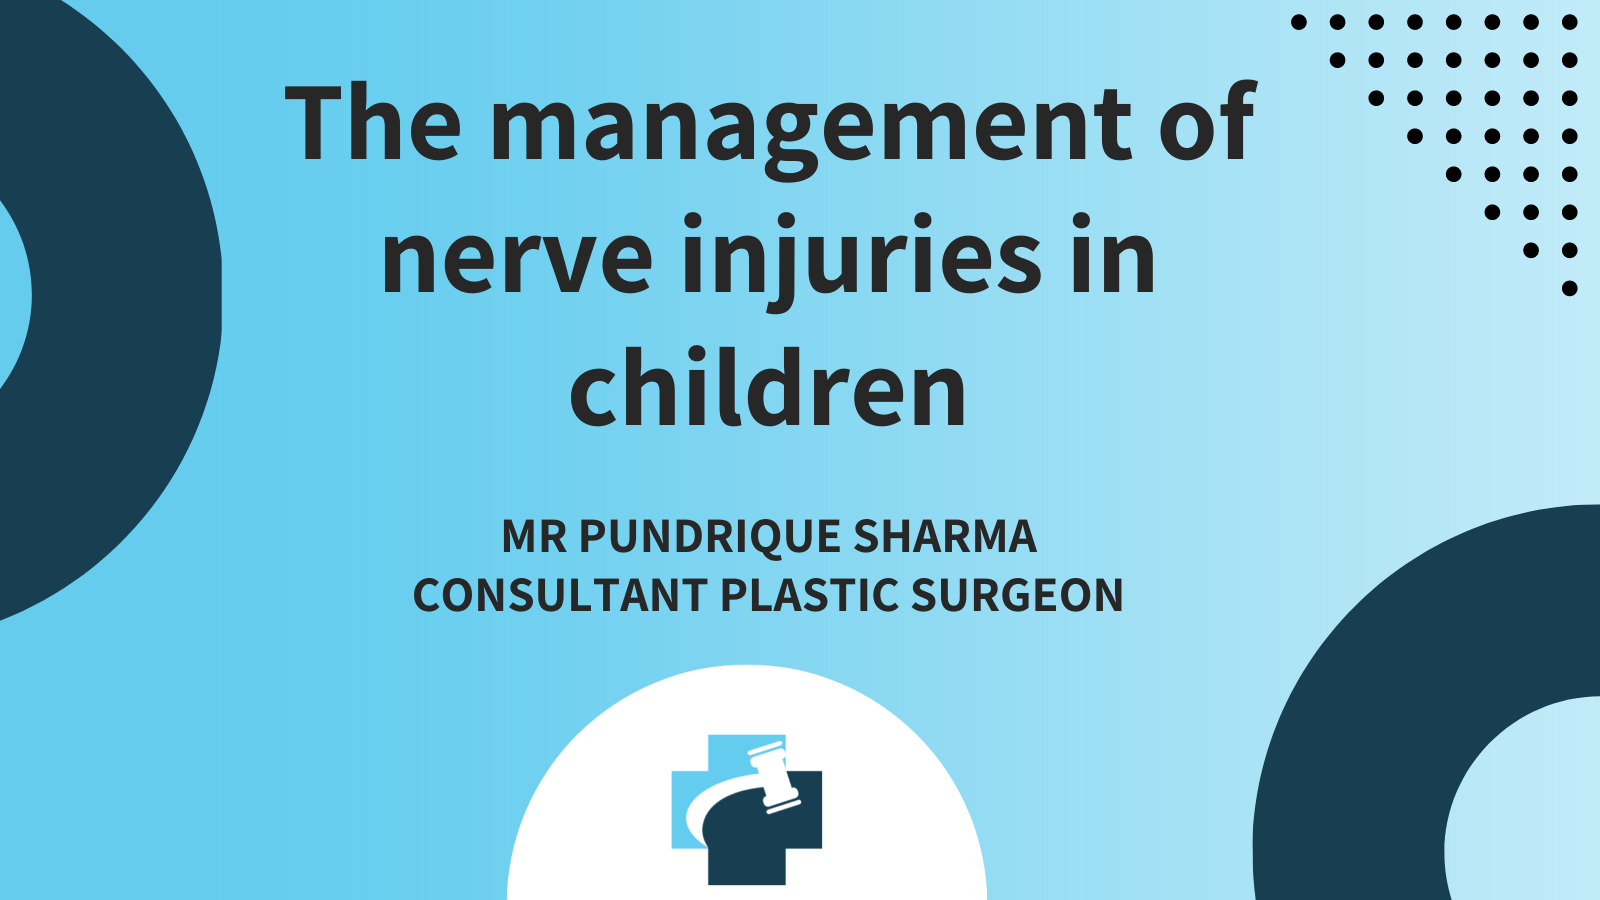 nerve injuries medicolegal